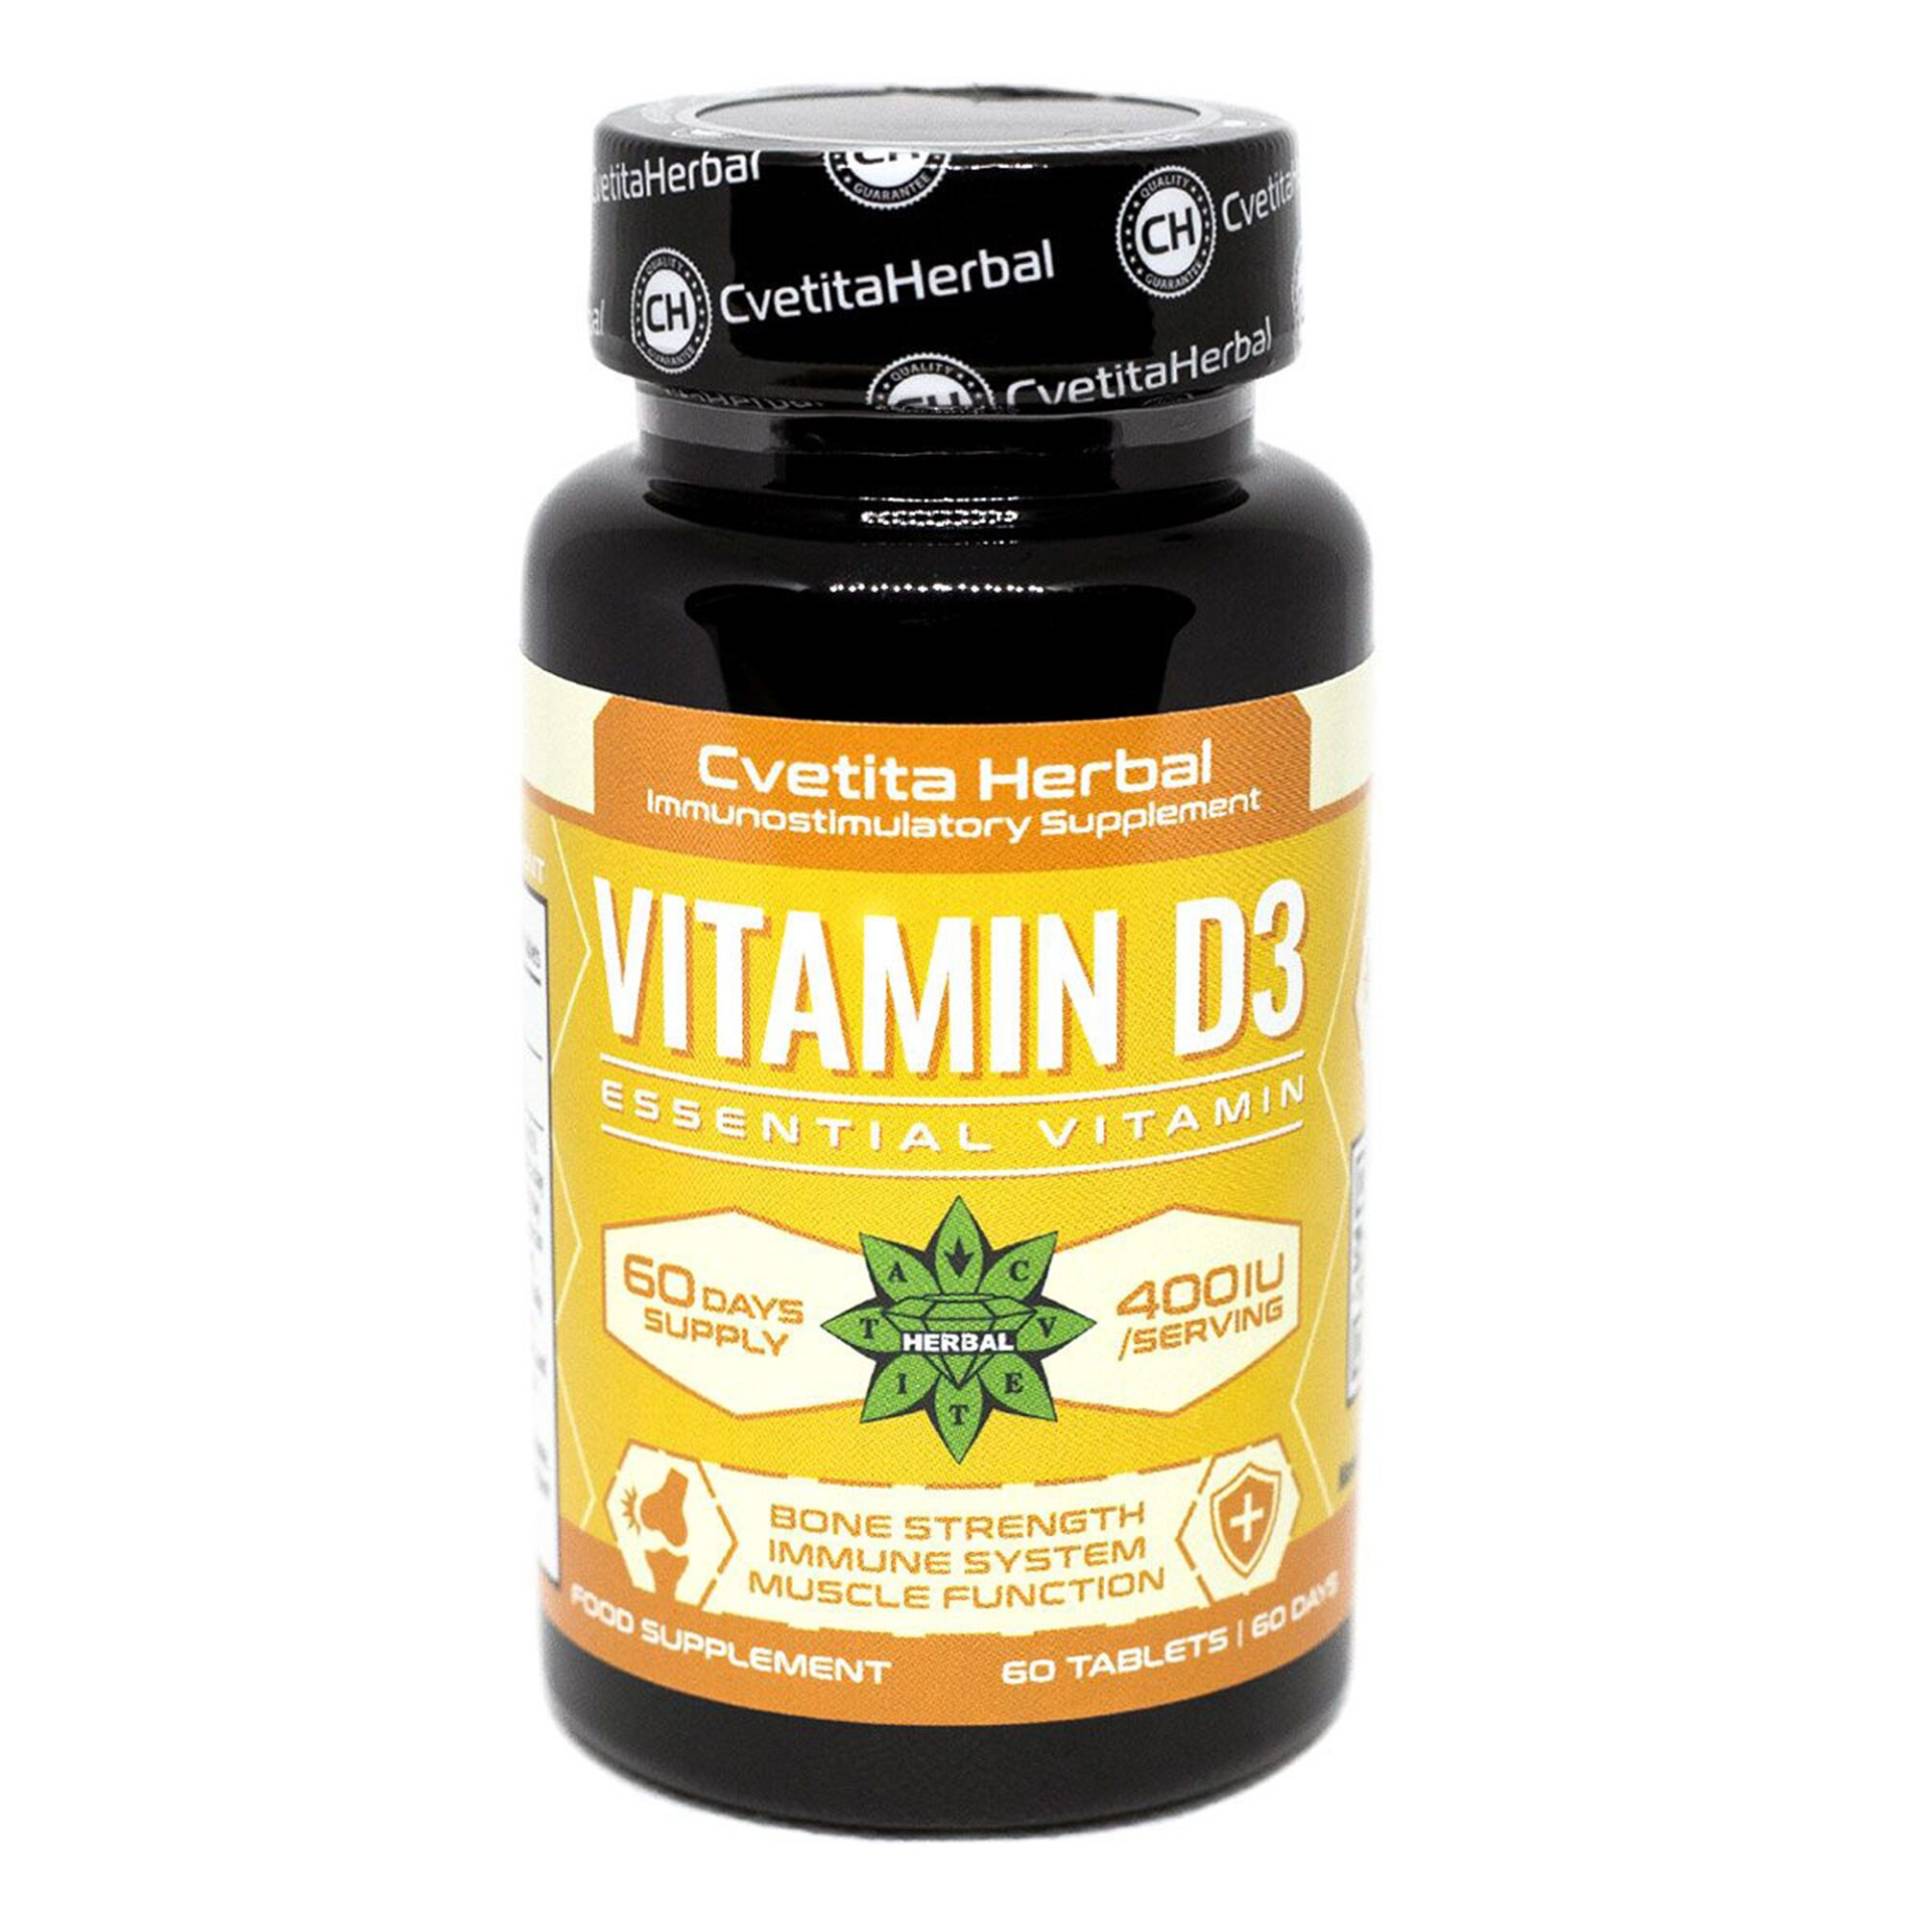 Vitamin D3, Immununterstützung, Knochengesundheit, Gesunde Muskelfunktion, Starke Gelenke, Cholecalciferol, Hohe Stärke, Sonnenschein 60 Tabletten von B2Btrade